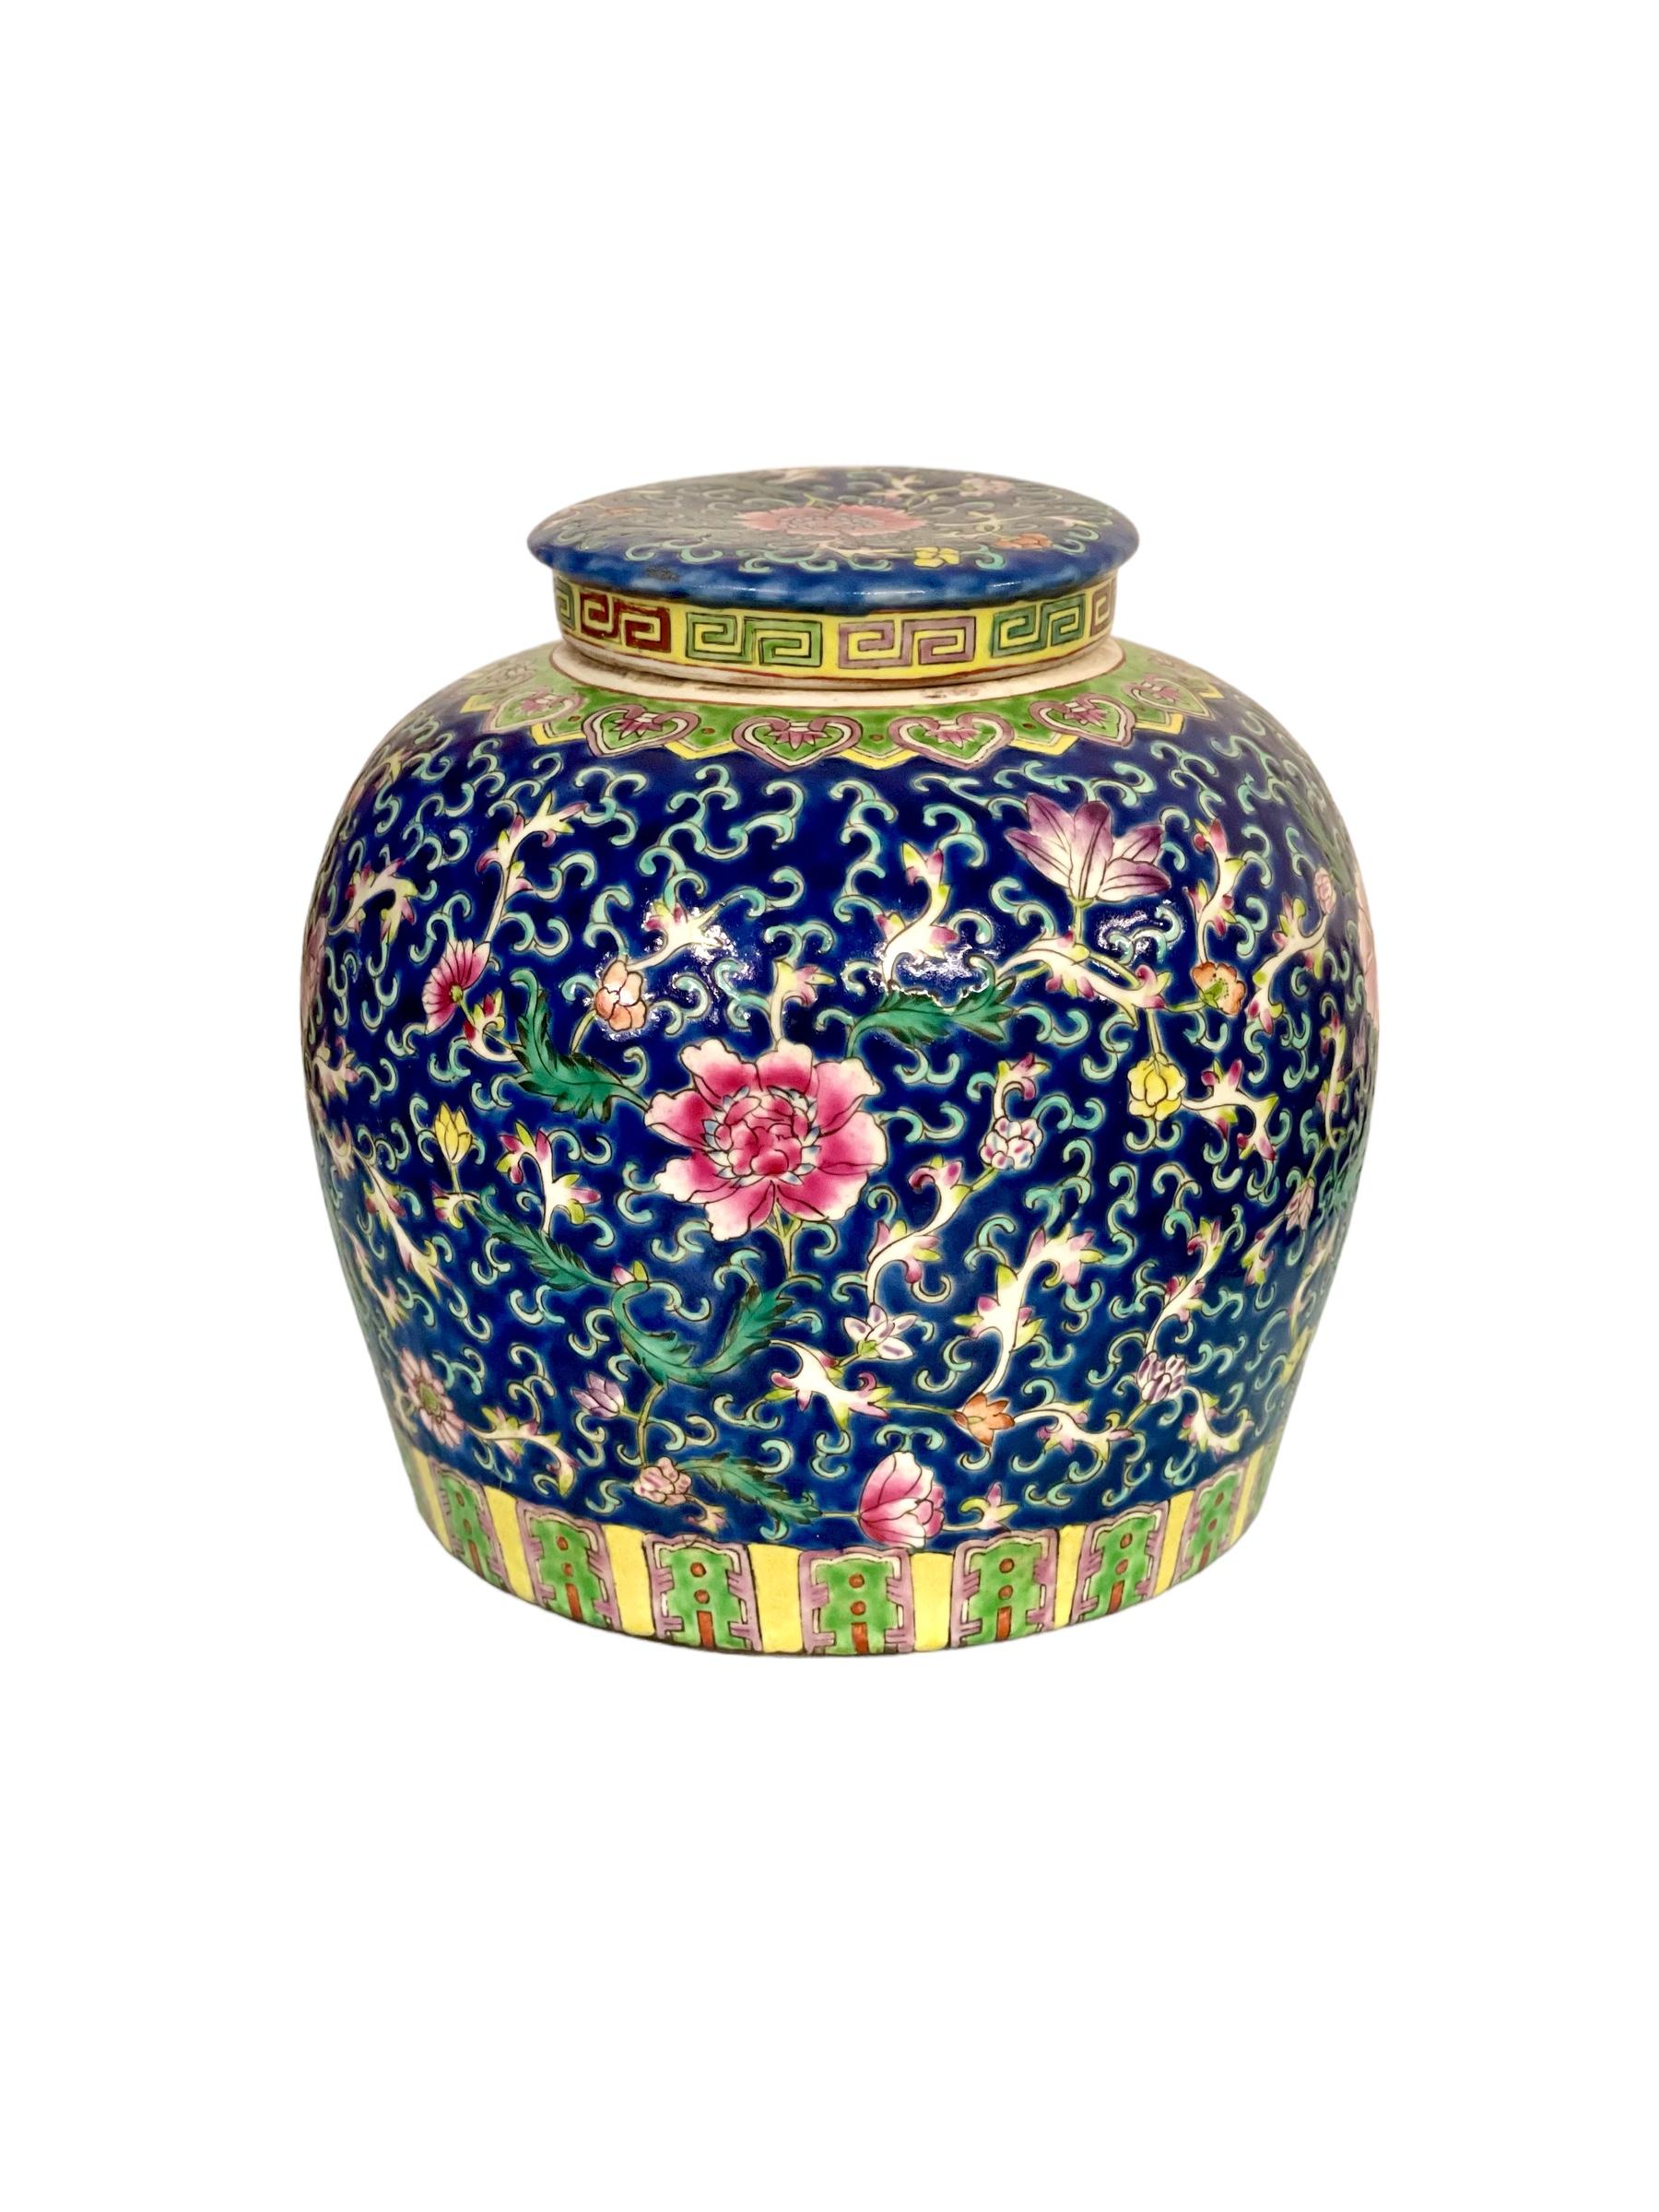 Un grand pot à couvercle peint à la main en porcelaine de Straits, présentant un fond bleu cobalt vibrant avec un feuillage émaillé abondamment détaillé et des motifs 